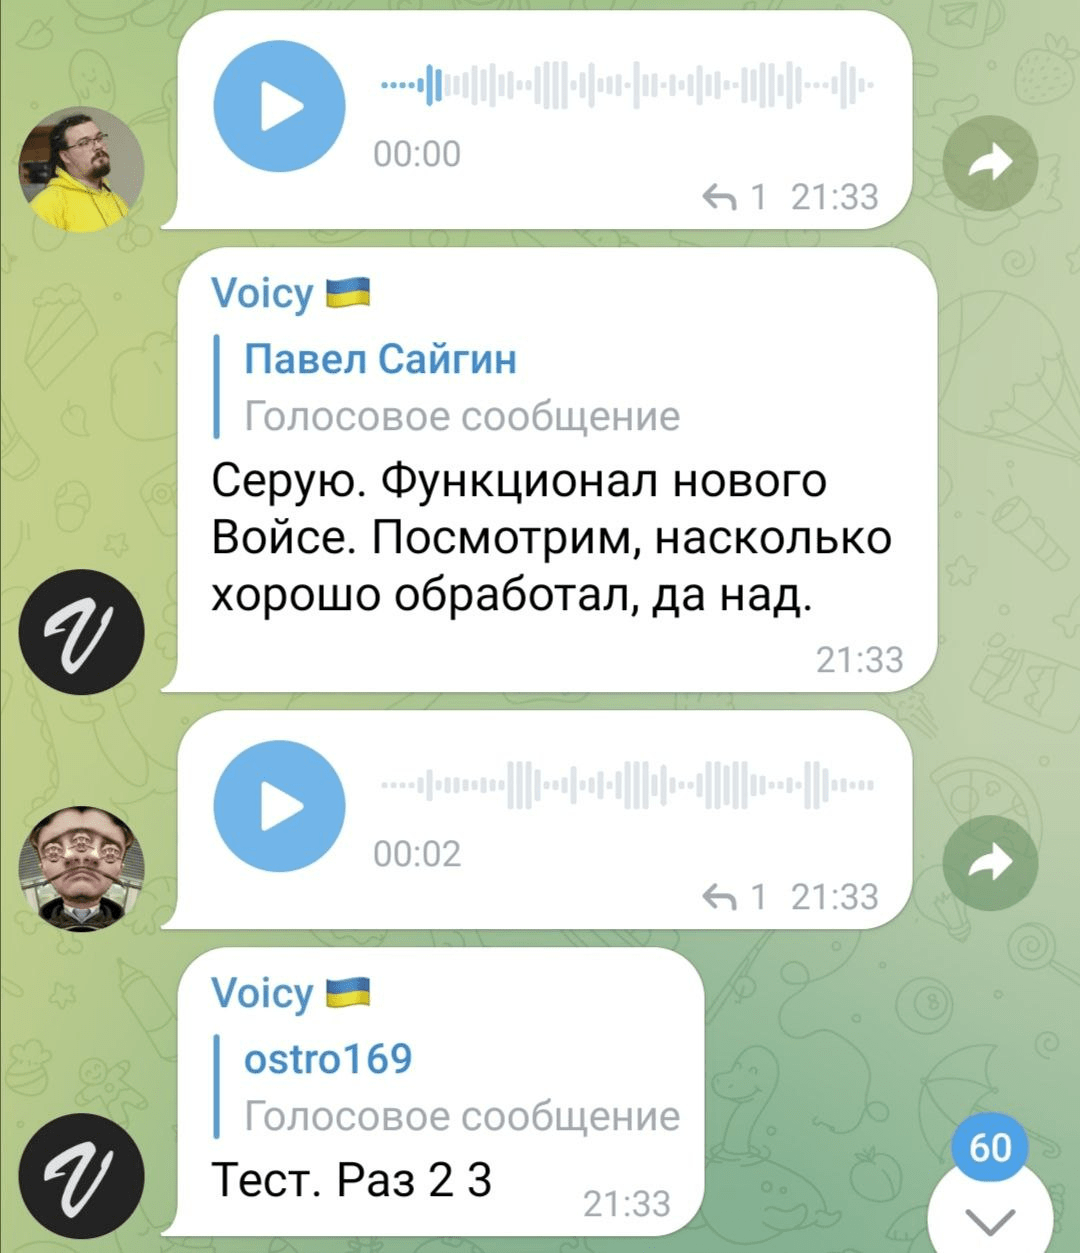 Телеграмм бот переводит голосовые сообщения в текст фото 15